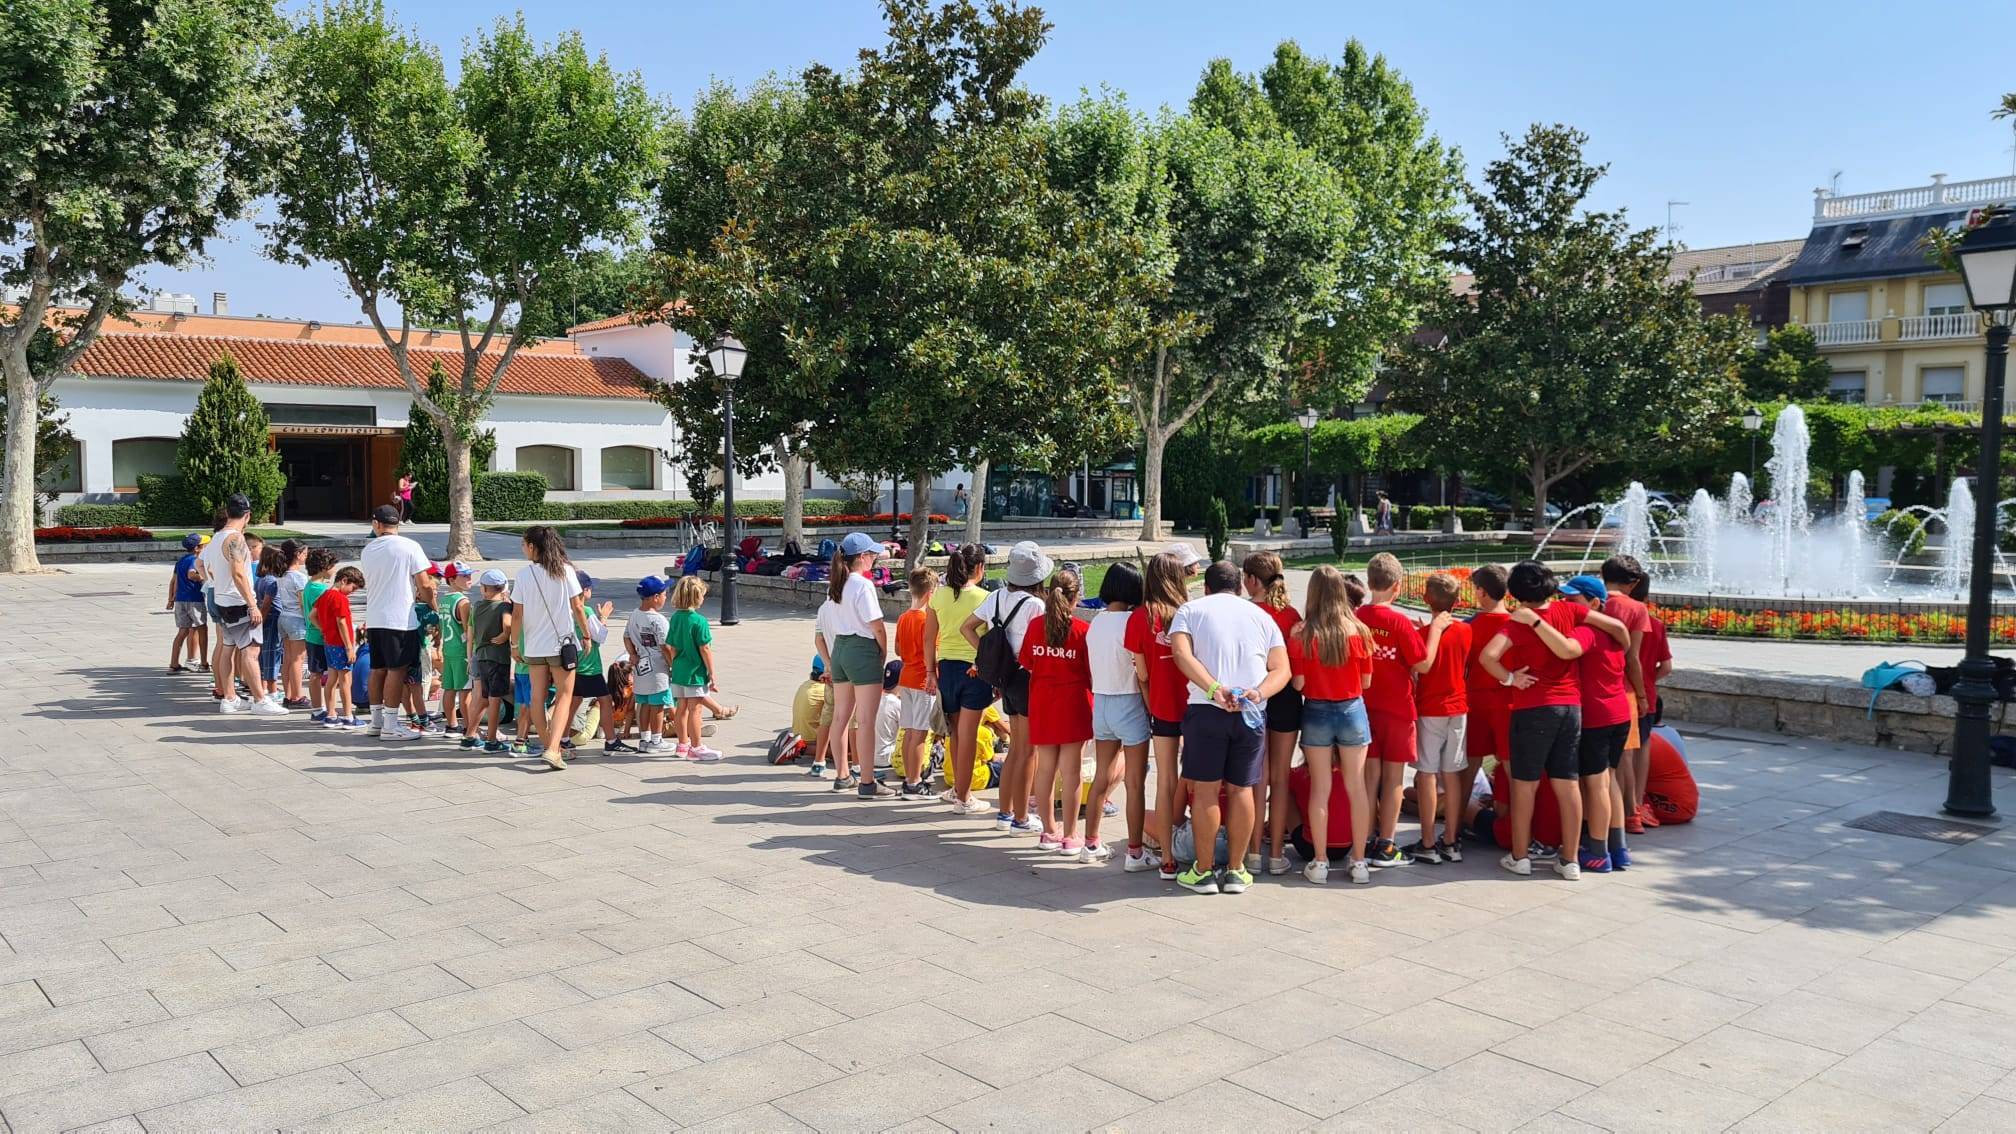 Participantes en el Minicampus de verano durante un juego en la plaza de España.